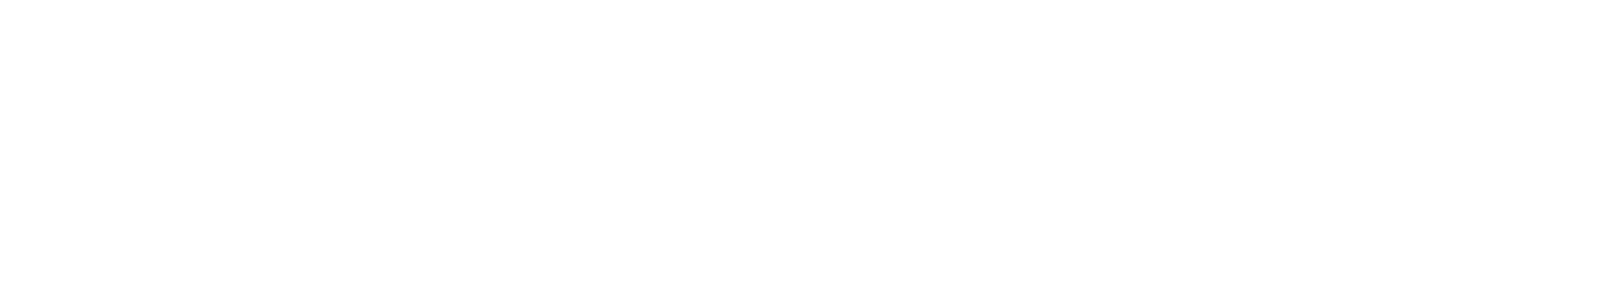 Aviva logo large for dark backgrounds (transparent PNG)